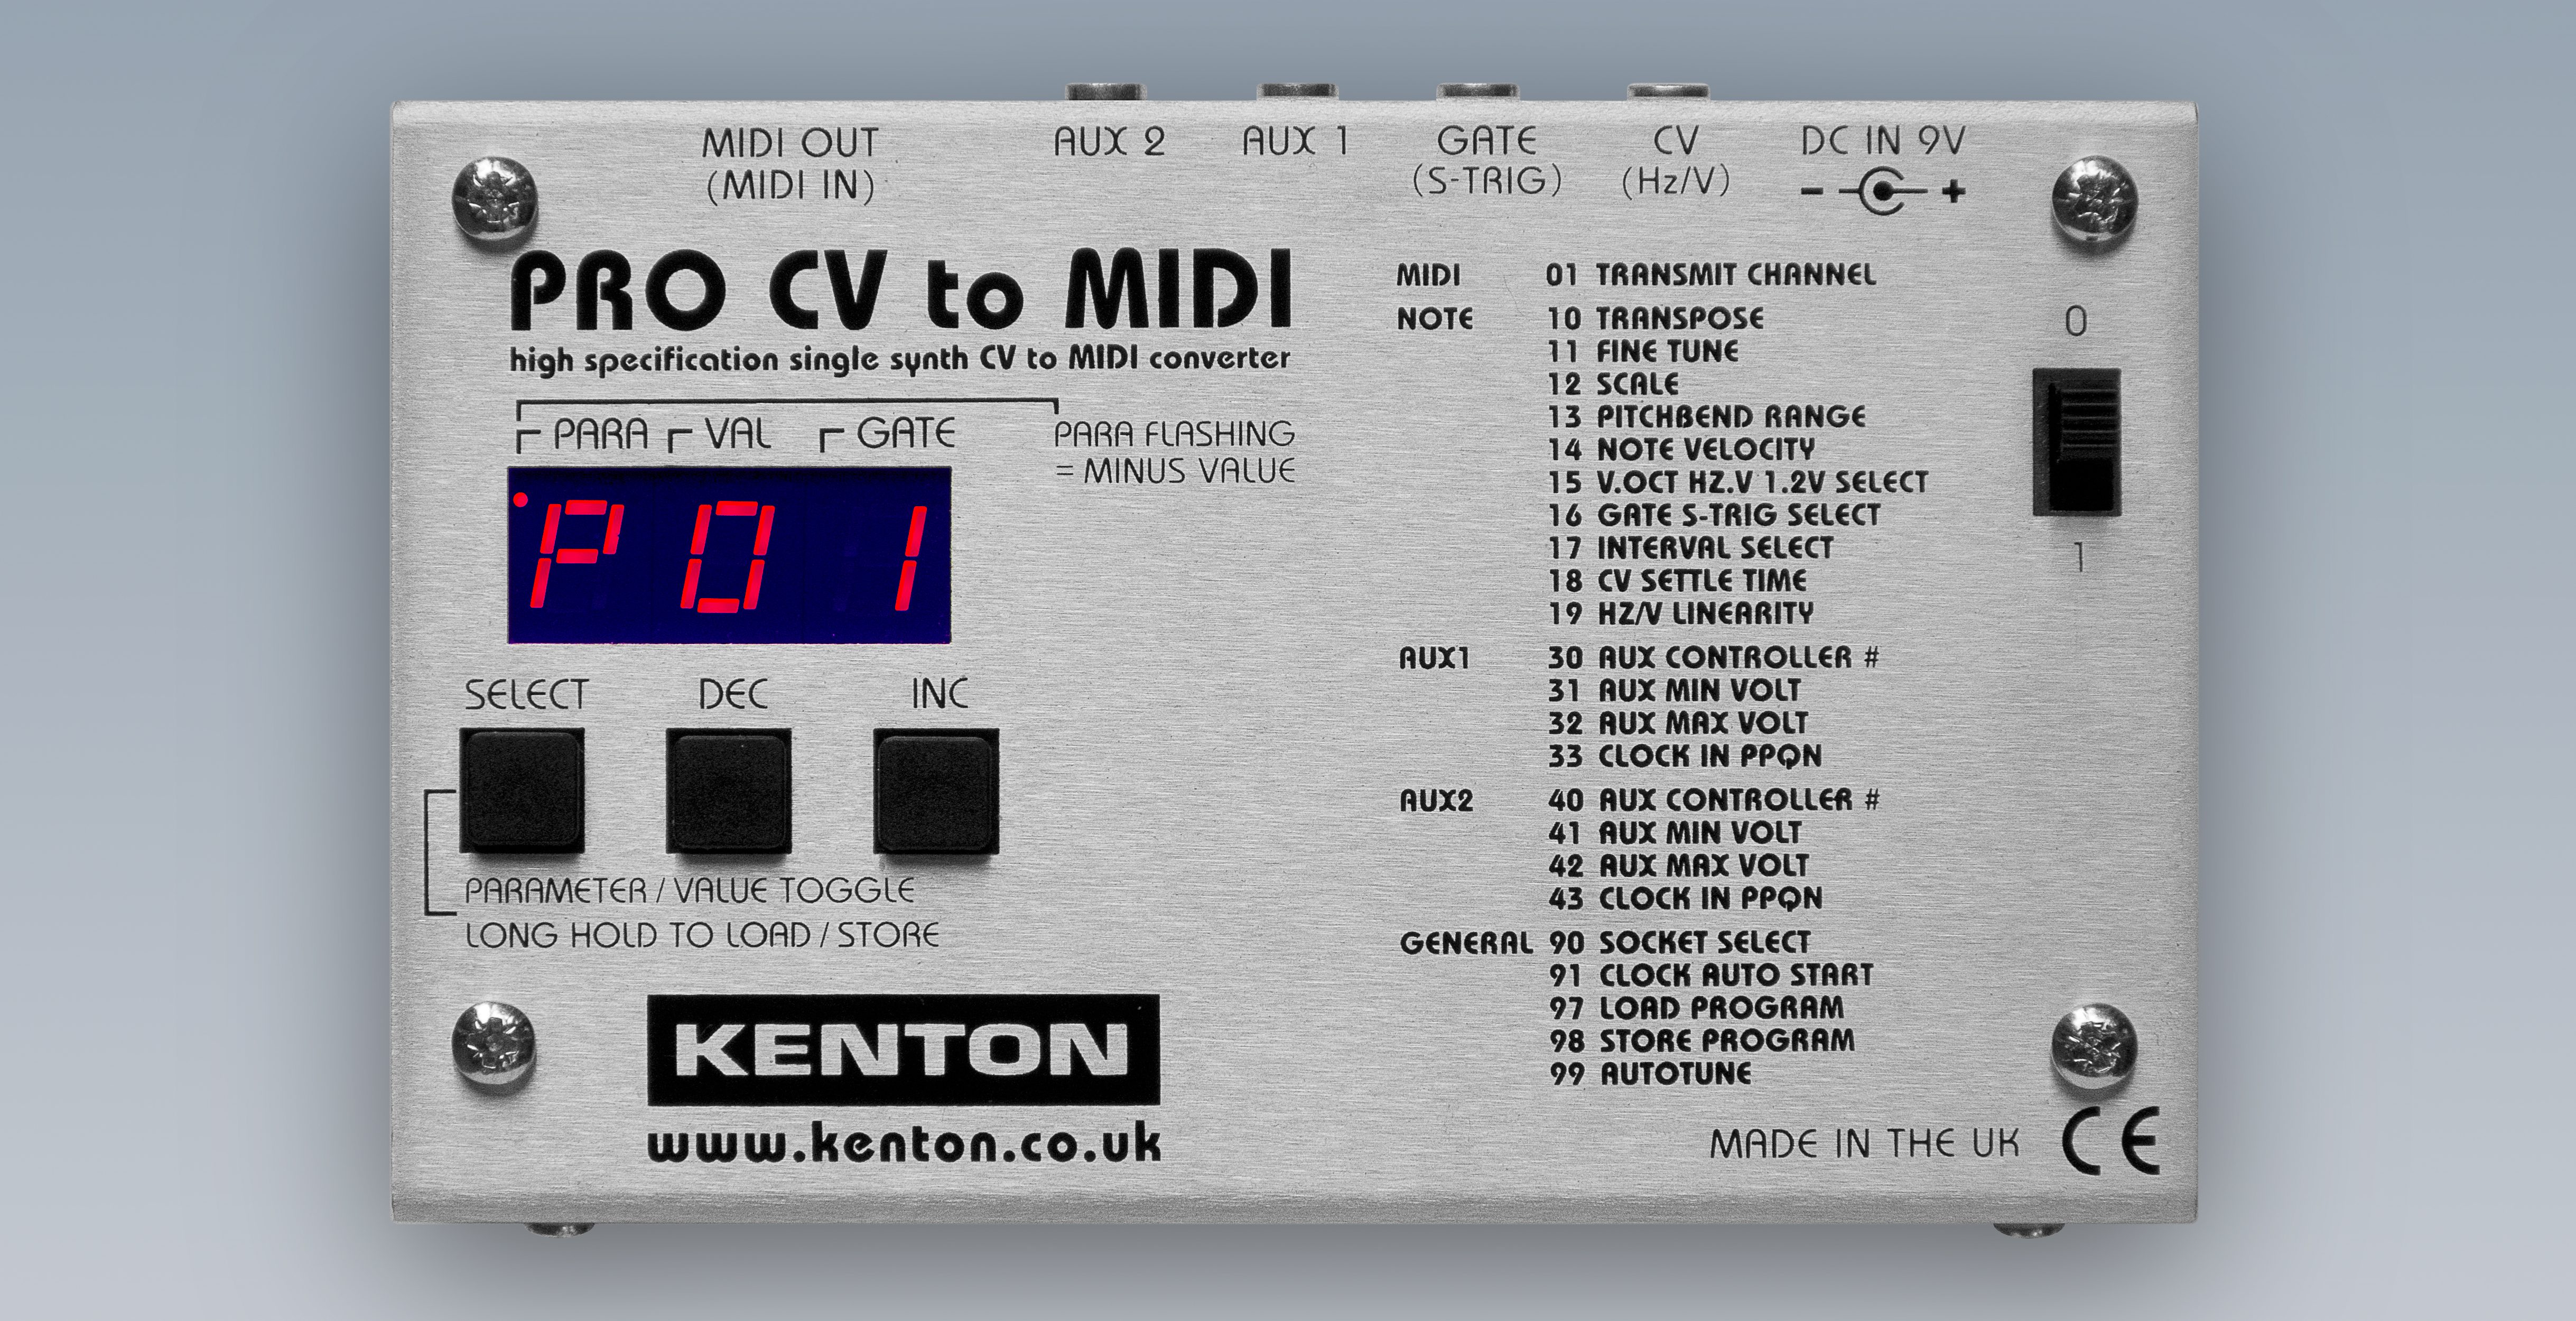 Kenton Electronics Intros Pro CV To MIDI – Synthtopia